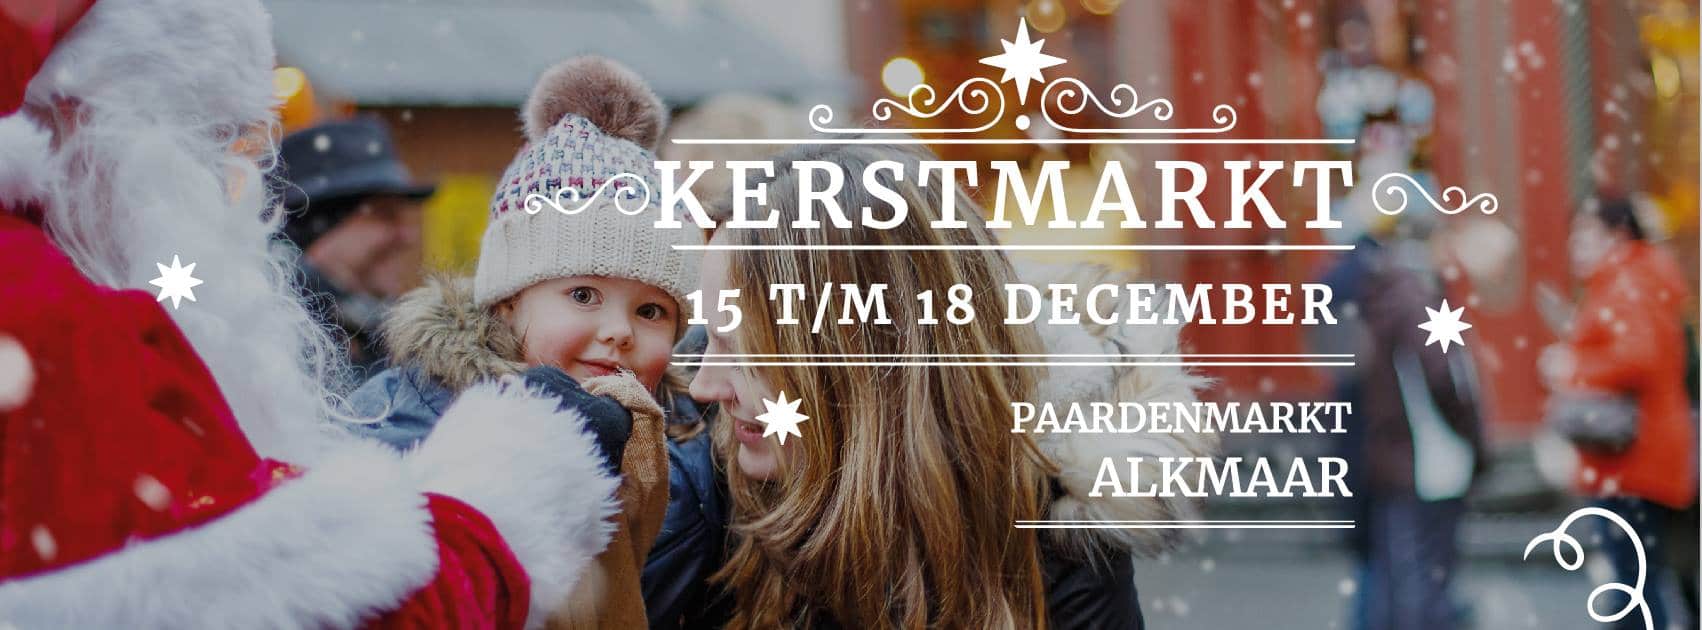 Kerstmarkt Alkmaar 2016